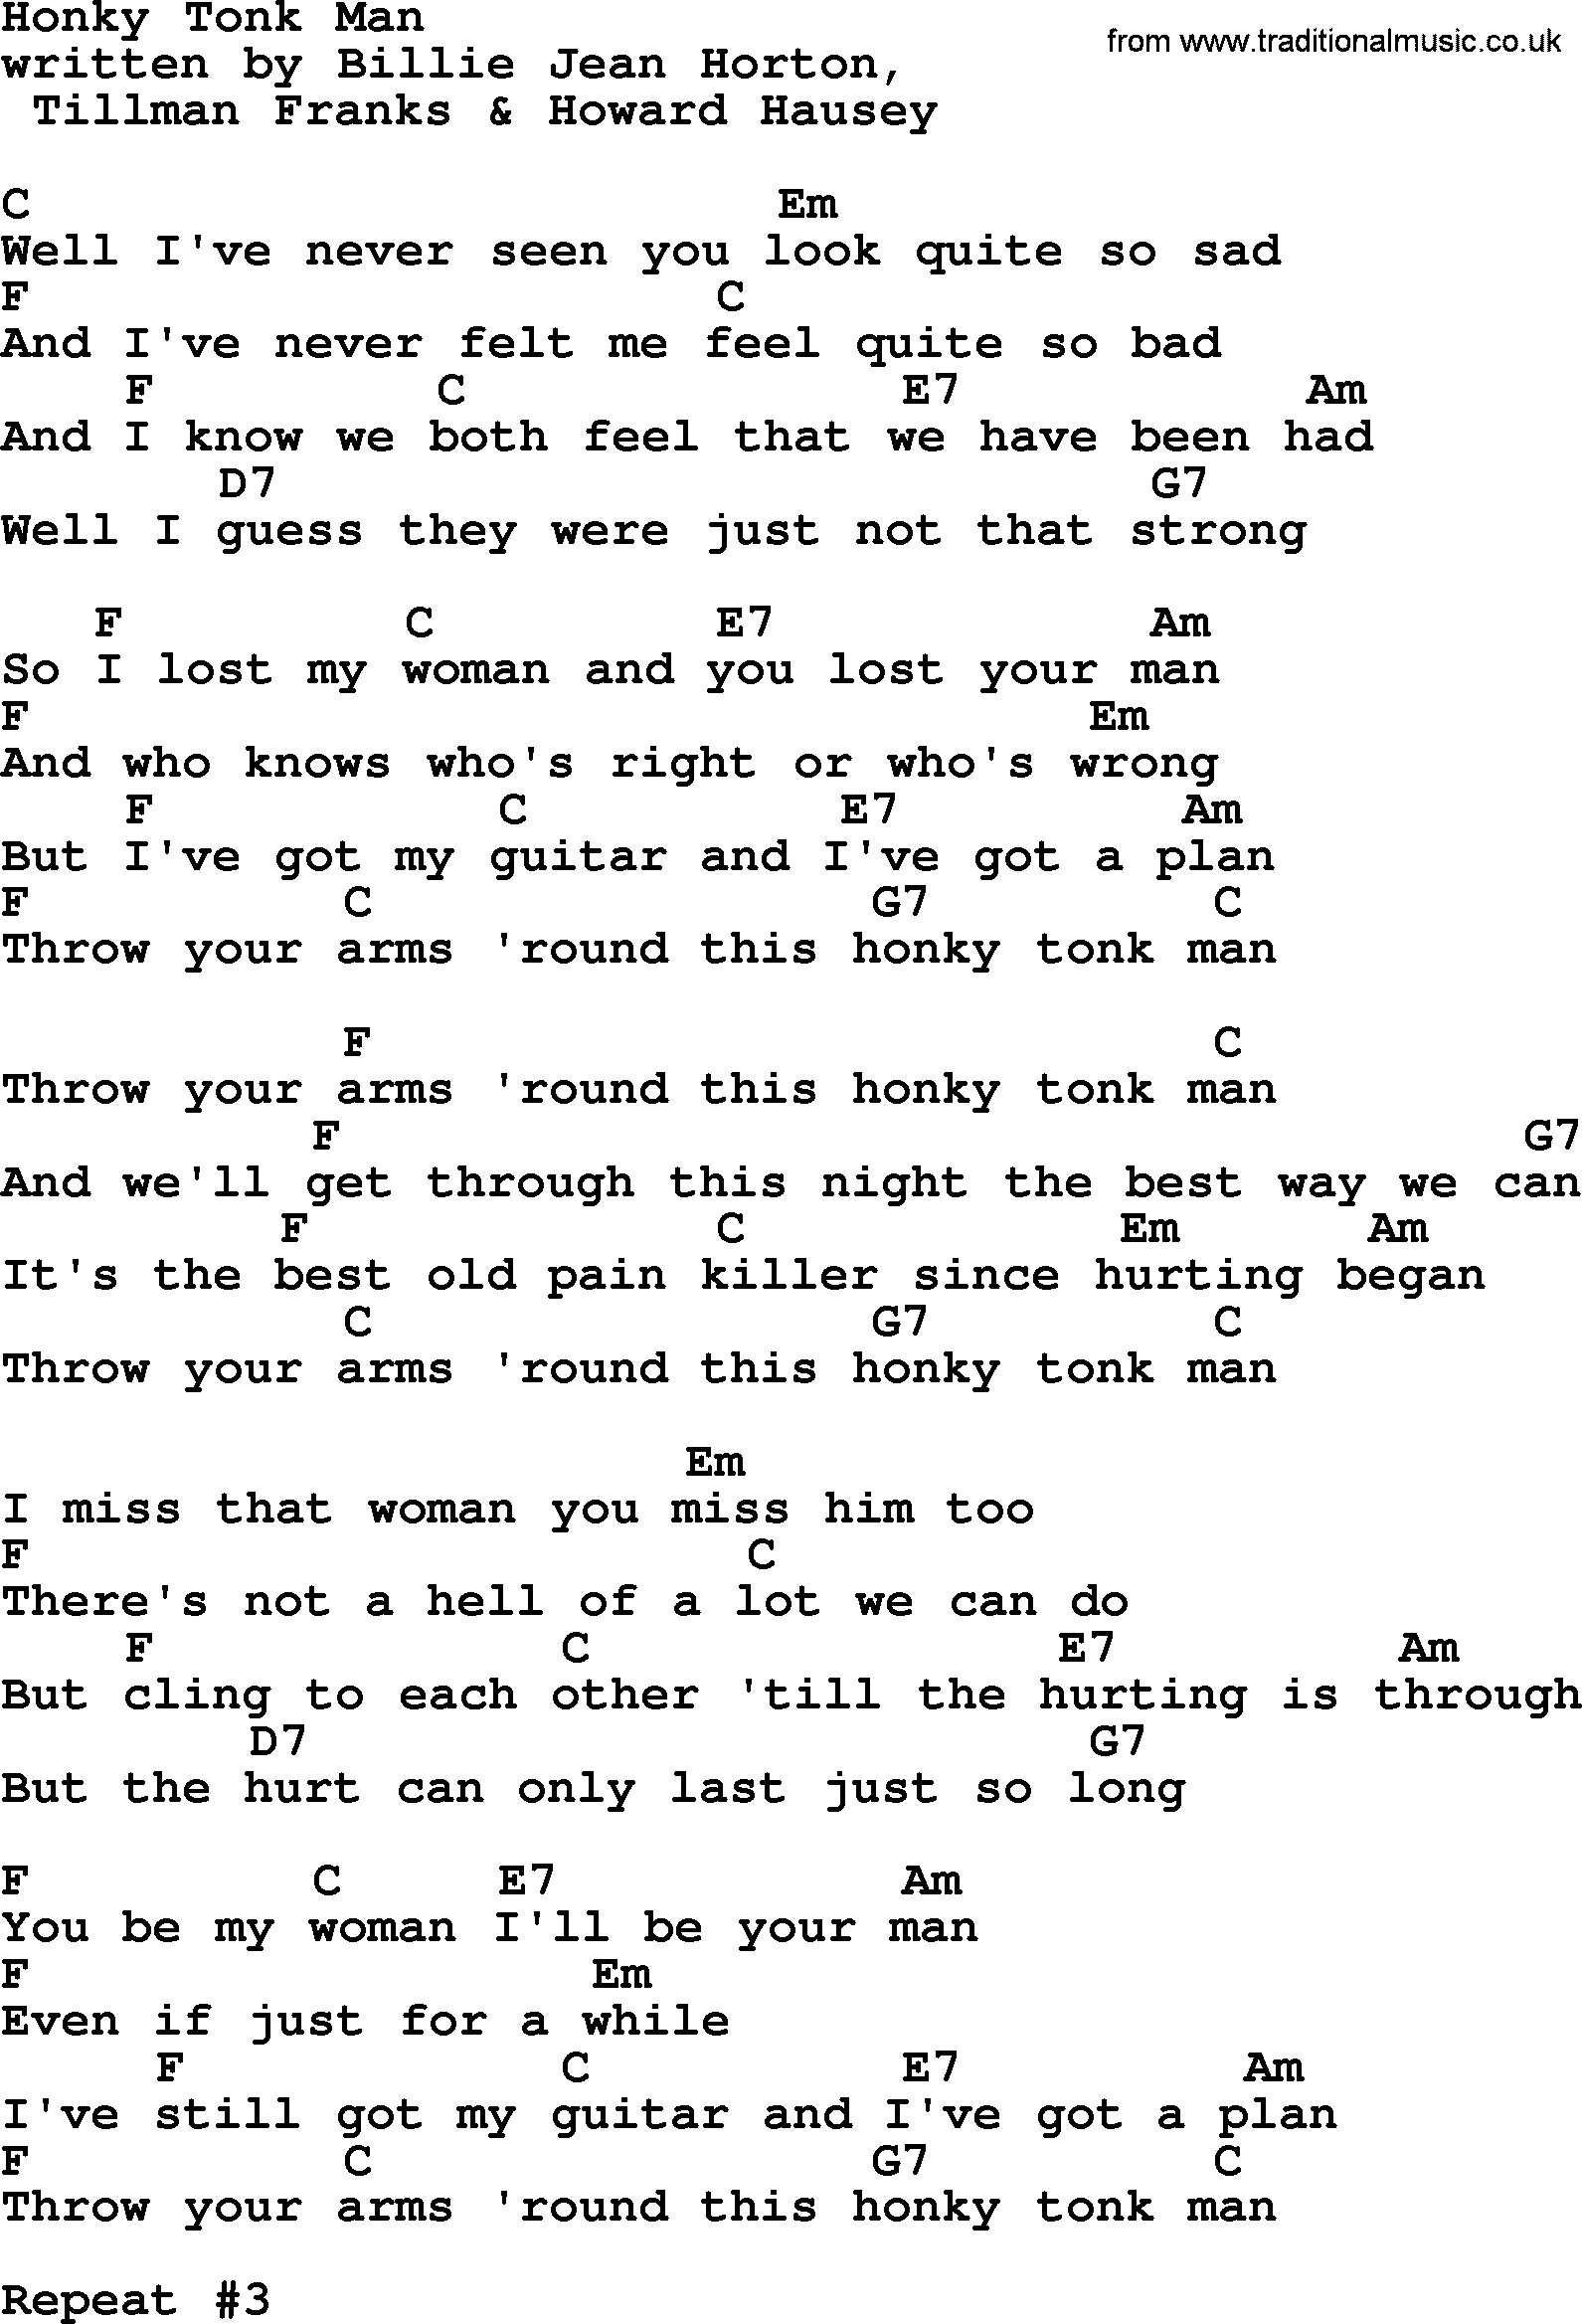 Marty Robbins song: Honky Tonk Man, lyrics and chords